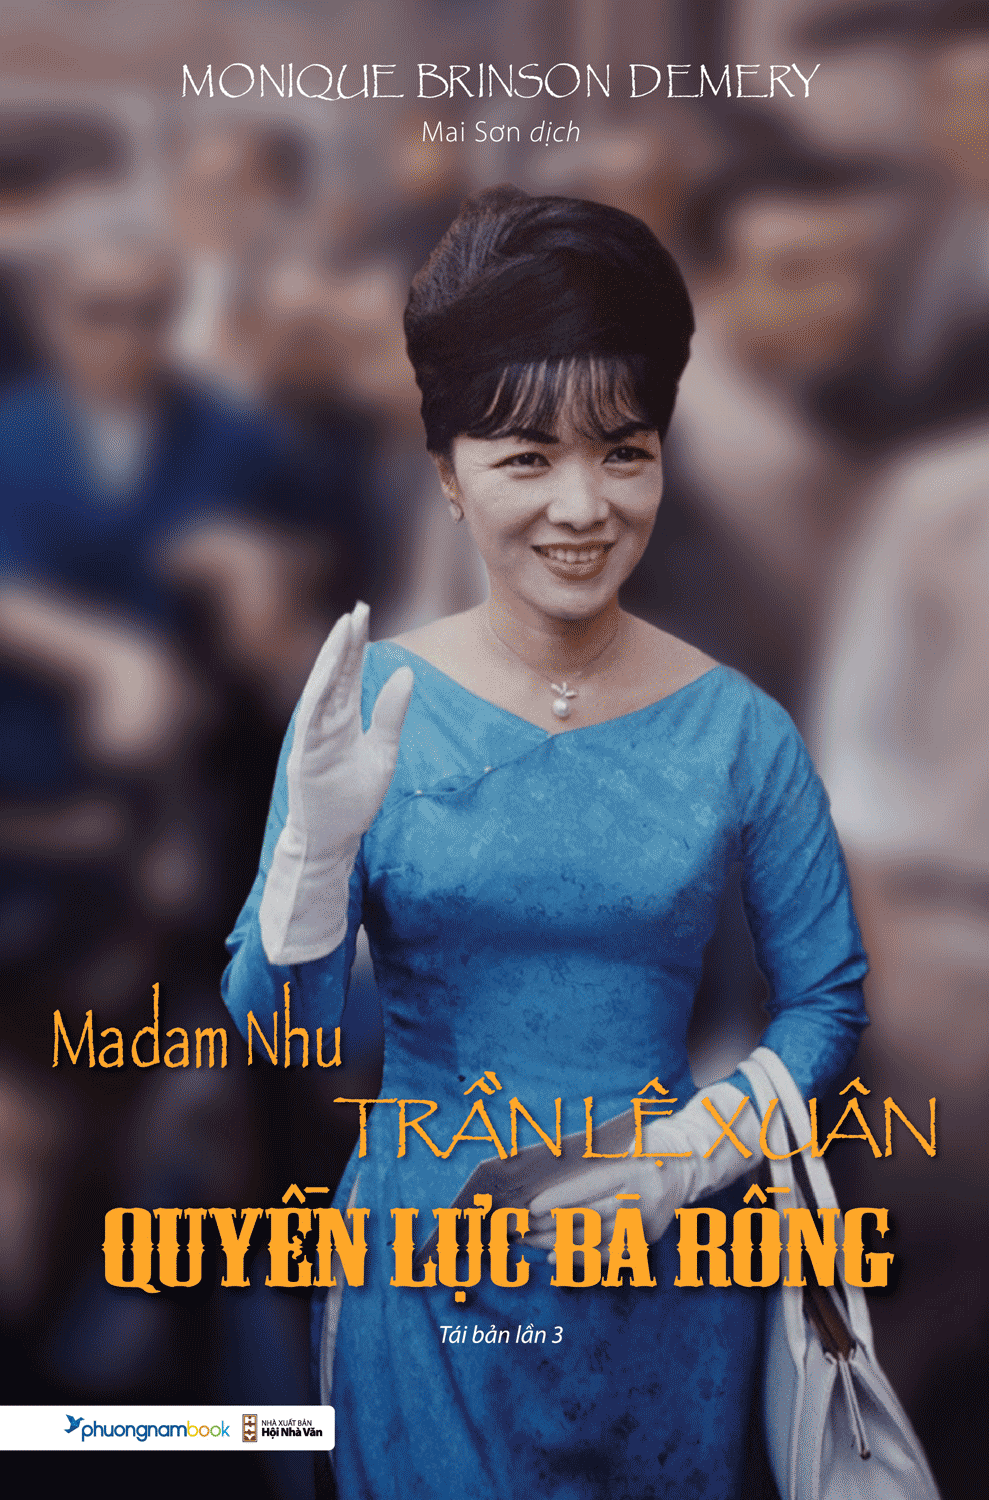 Madam Nhu Trần Lệ Xuân- Quyền Lực Bà Rồng